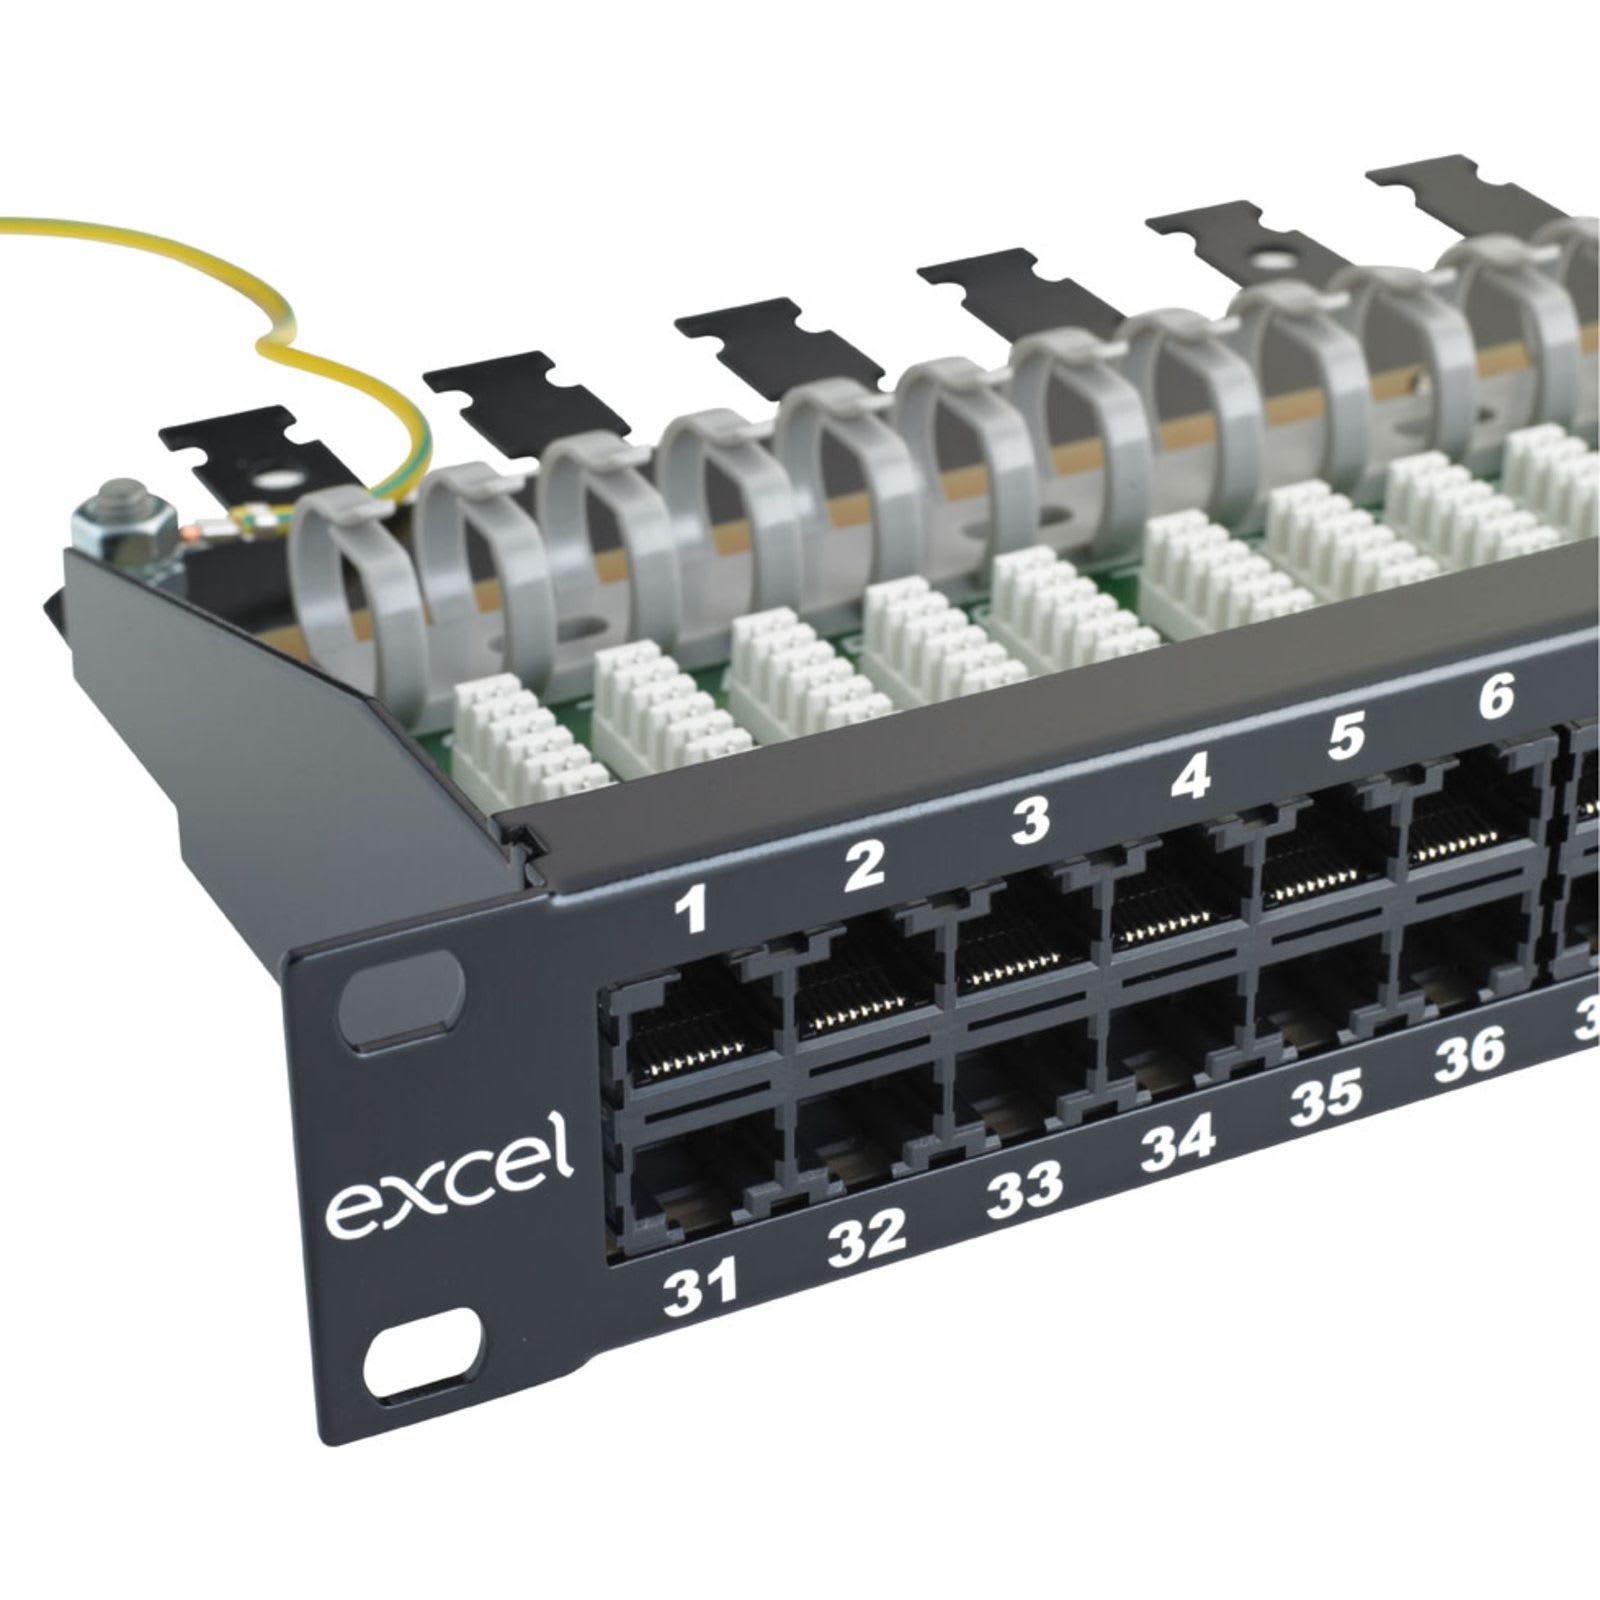 Excel Networking Solutions - Panneau téléphonique RJ45 50 ports 3 paires 1U, noir